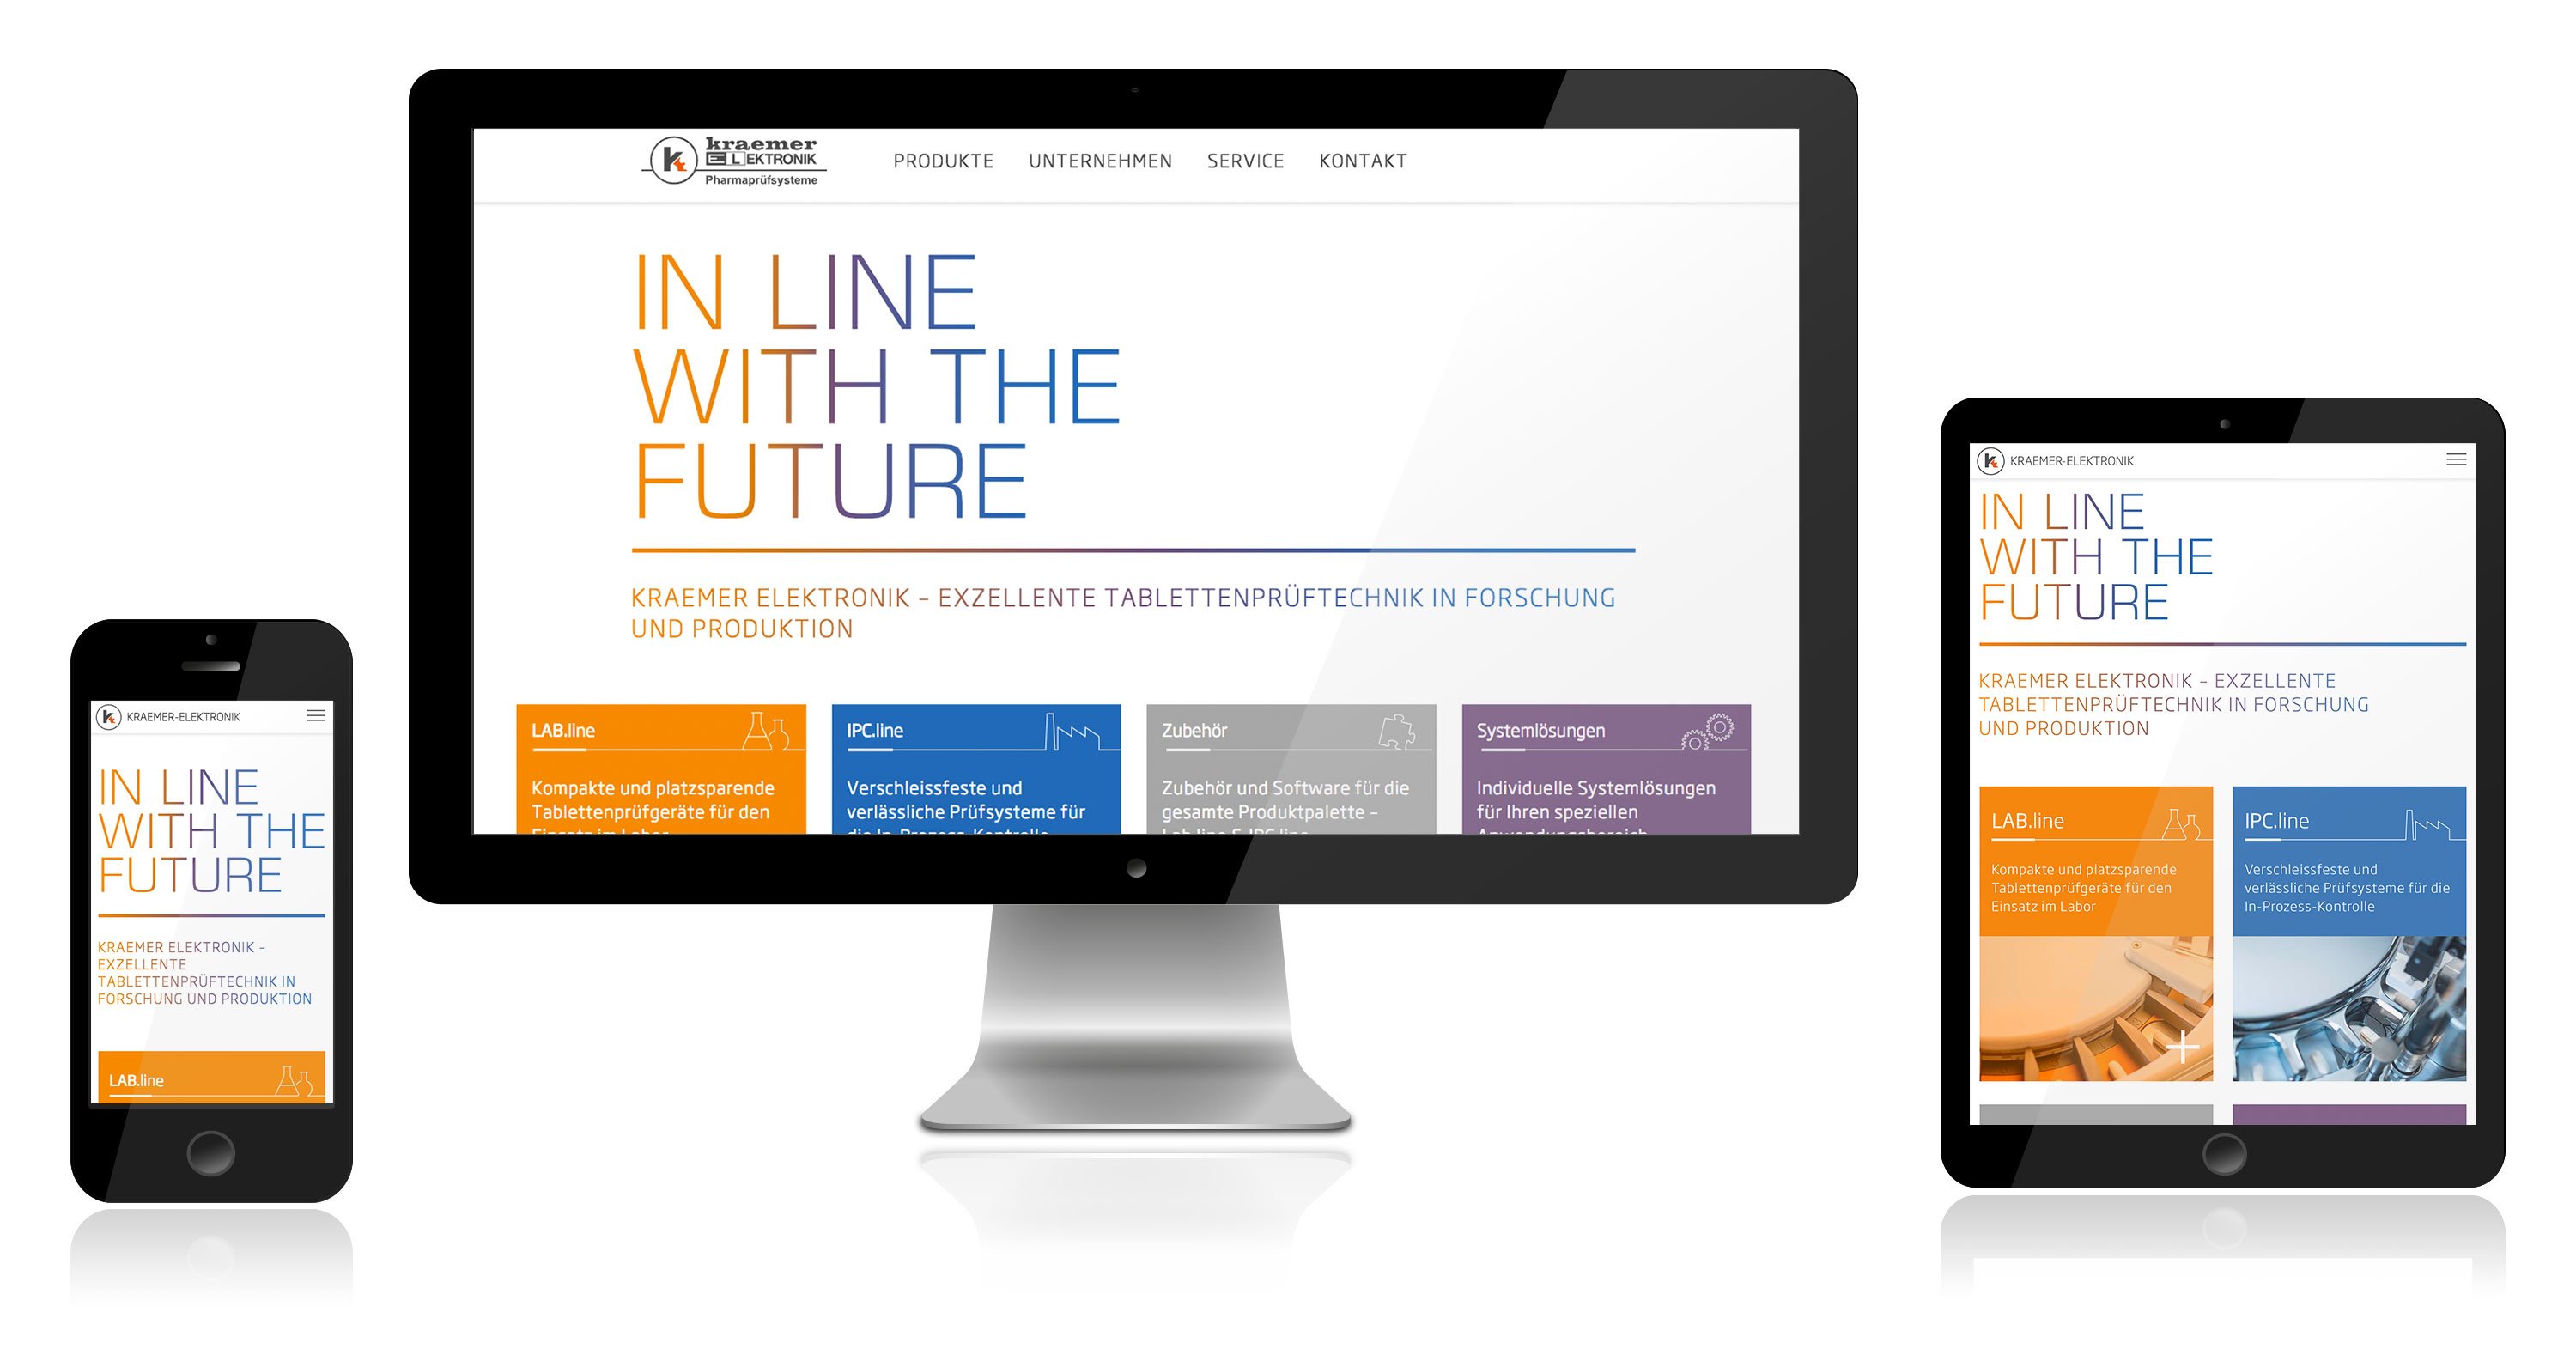 Corporate Website, Responsive Webdesign for Kraemer Elektronik: DIE NEUDENKER® Agency, Darmstadt